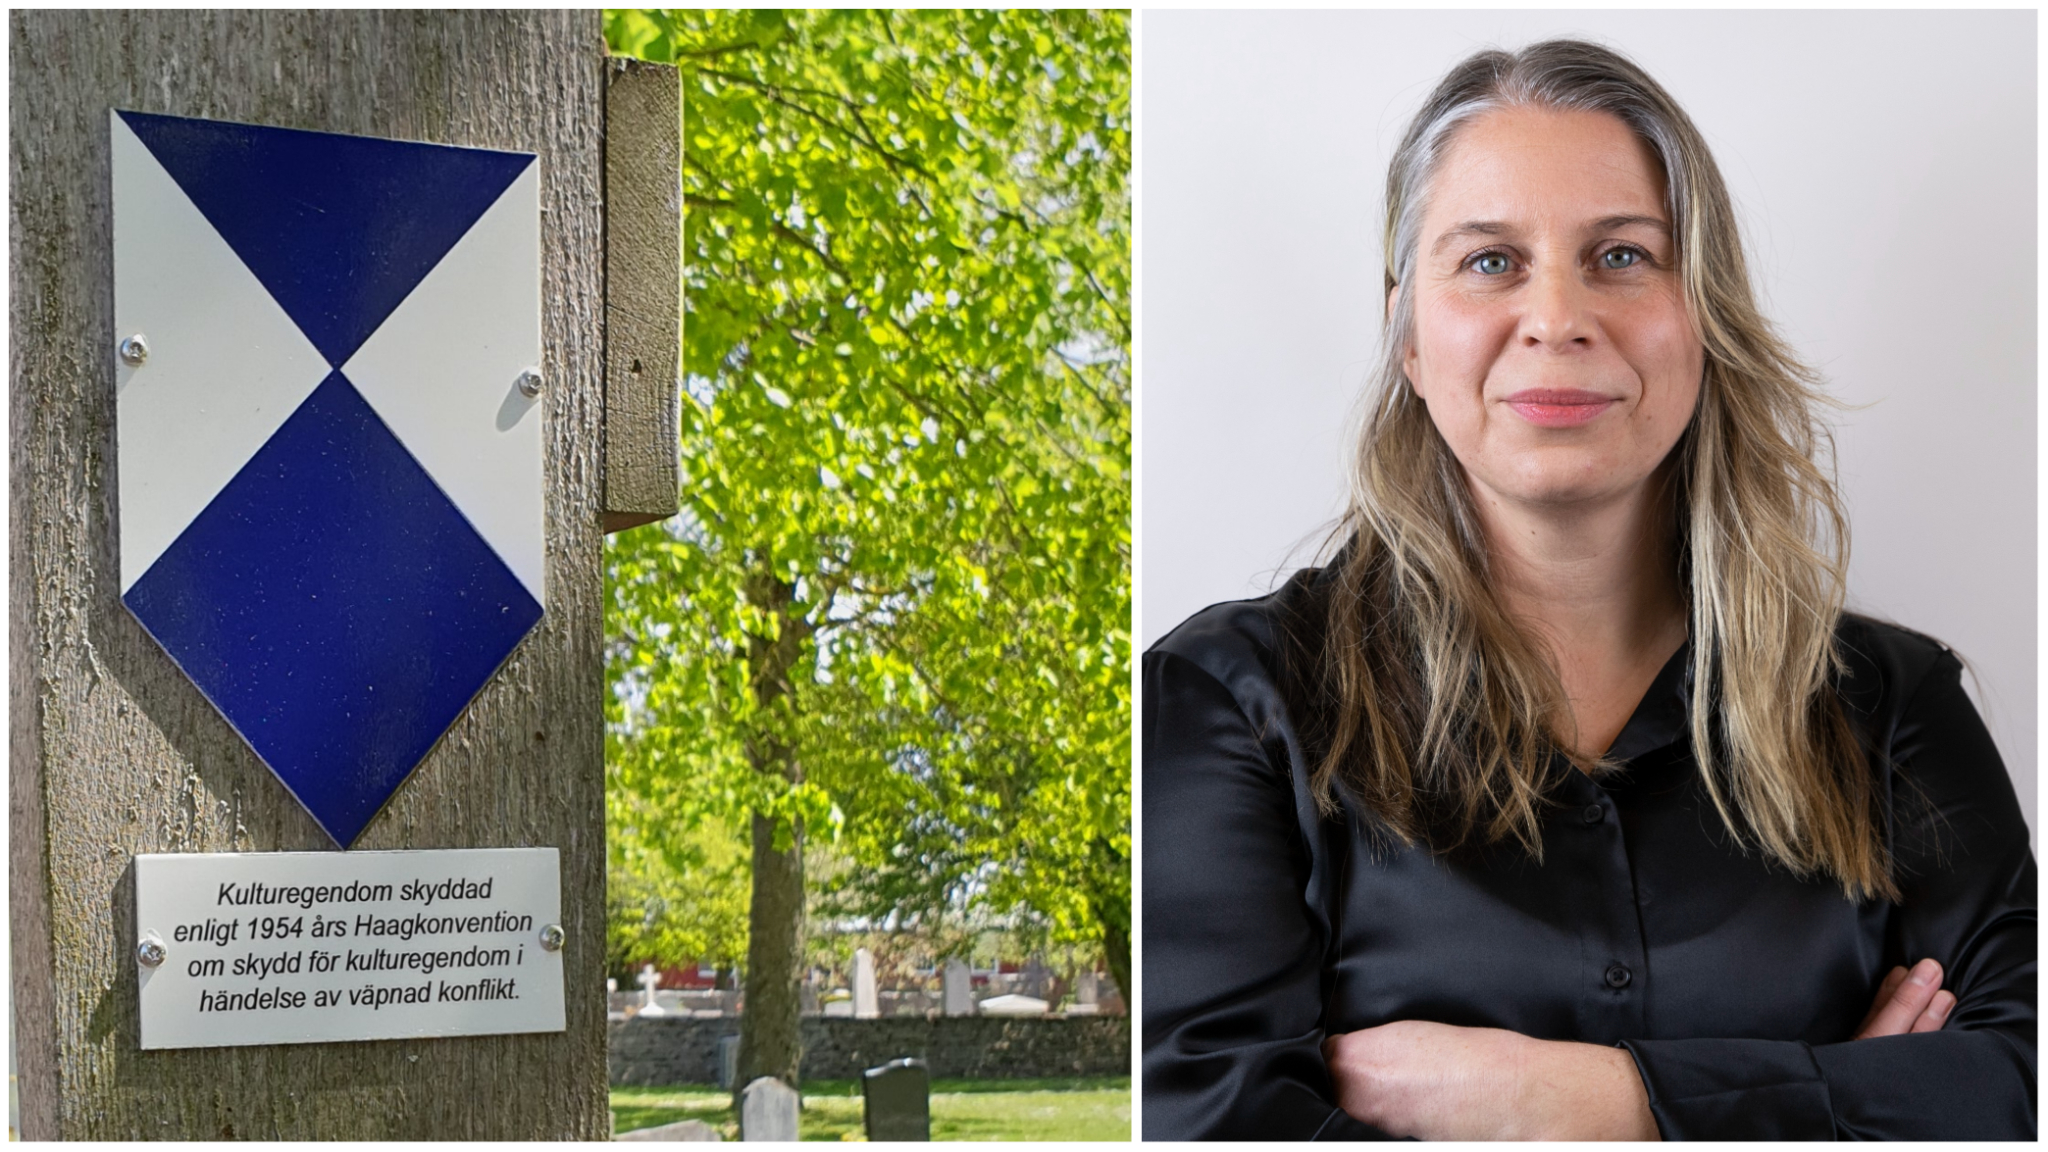 Tvådelat foto: Till vänster blåvit Haag-konventionssköld, skydd av kulturegendom i händelse av krig; till höger porträttbild på Anna McWilliams, FOI.